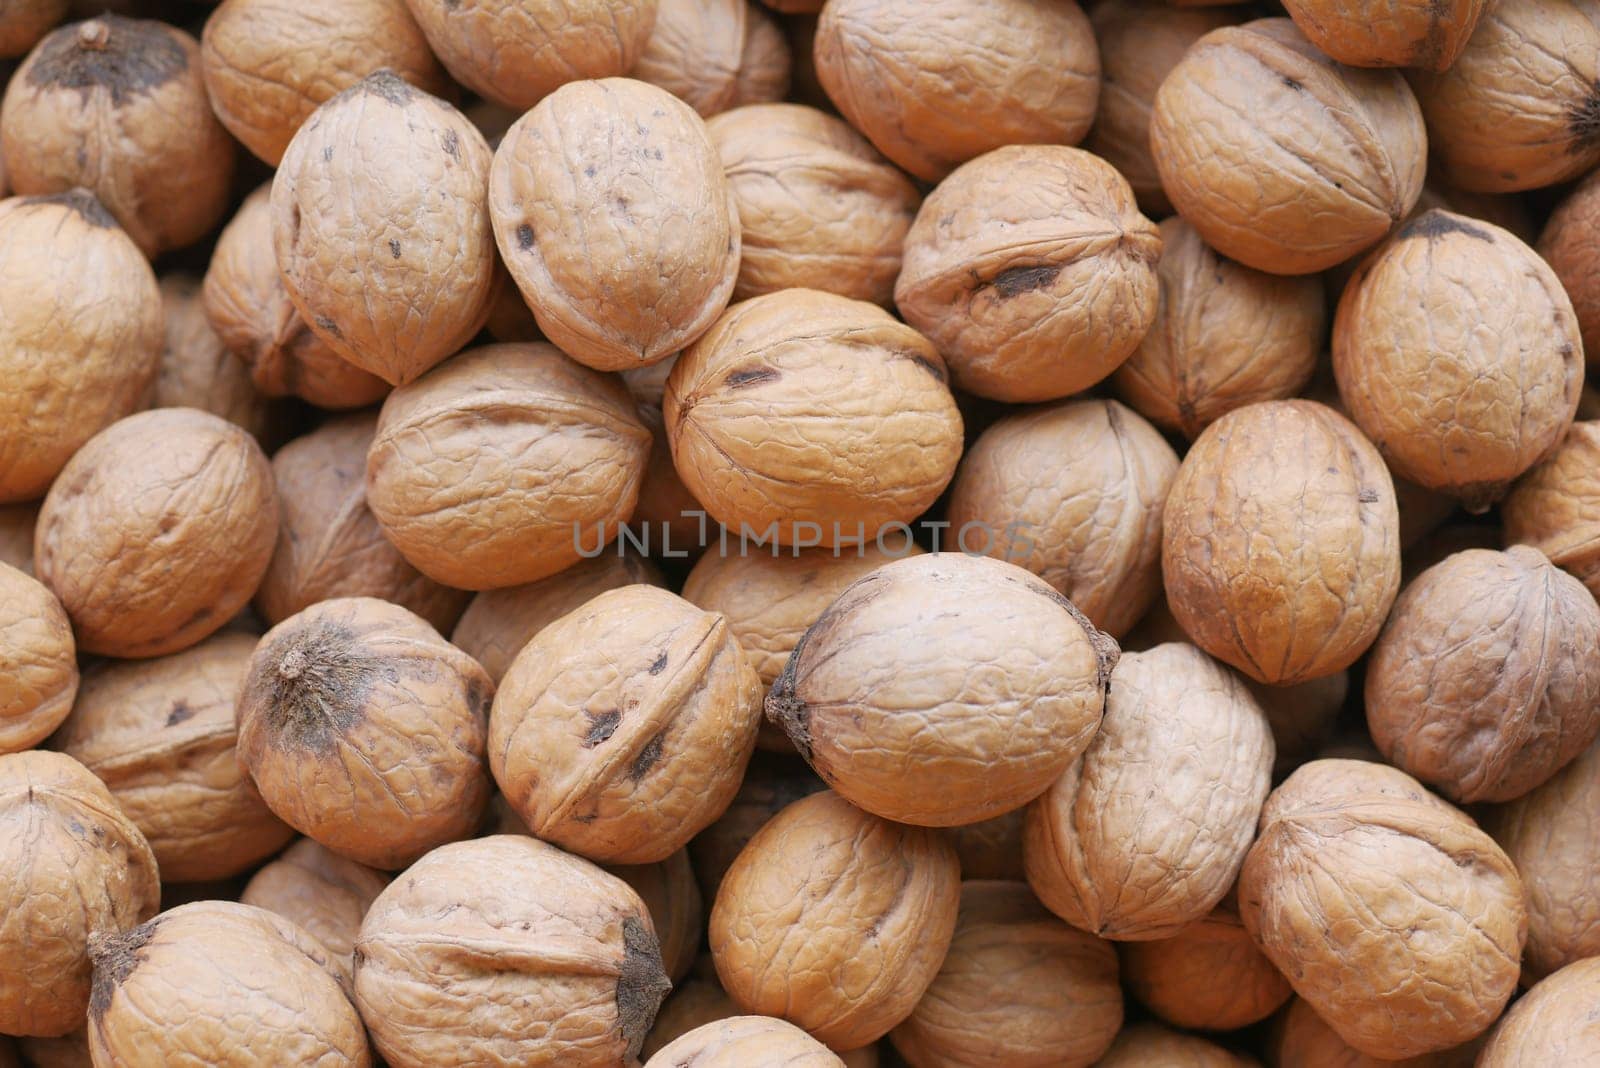 stack of natural walnuts selling at shop .